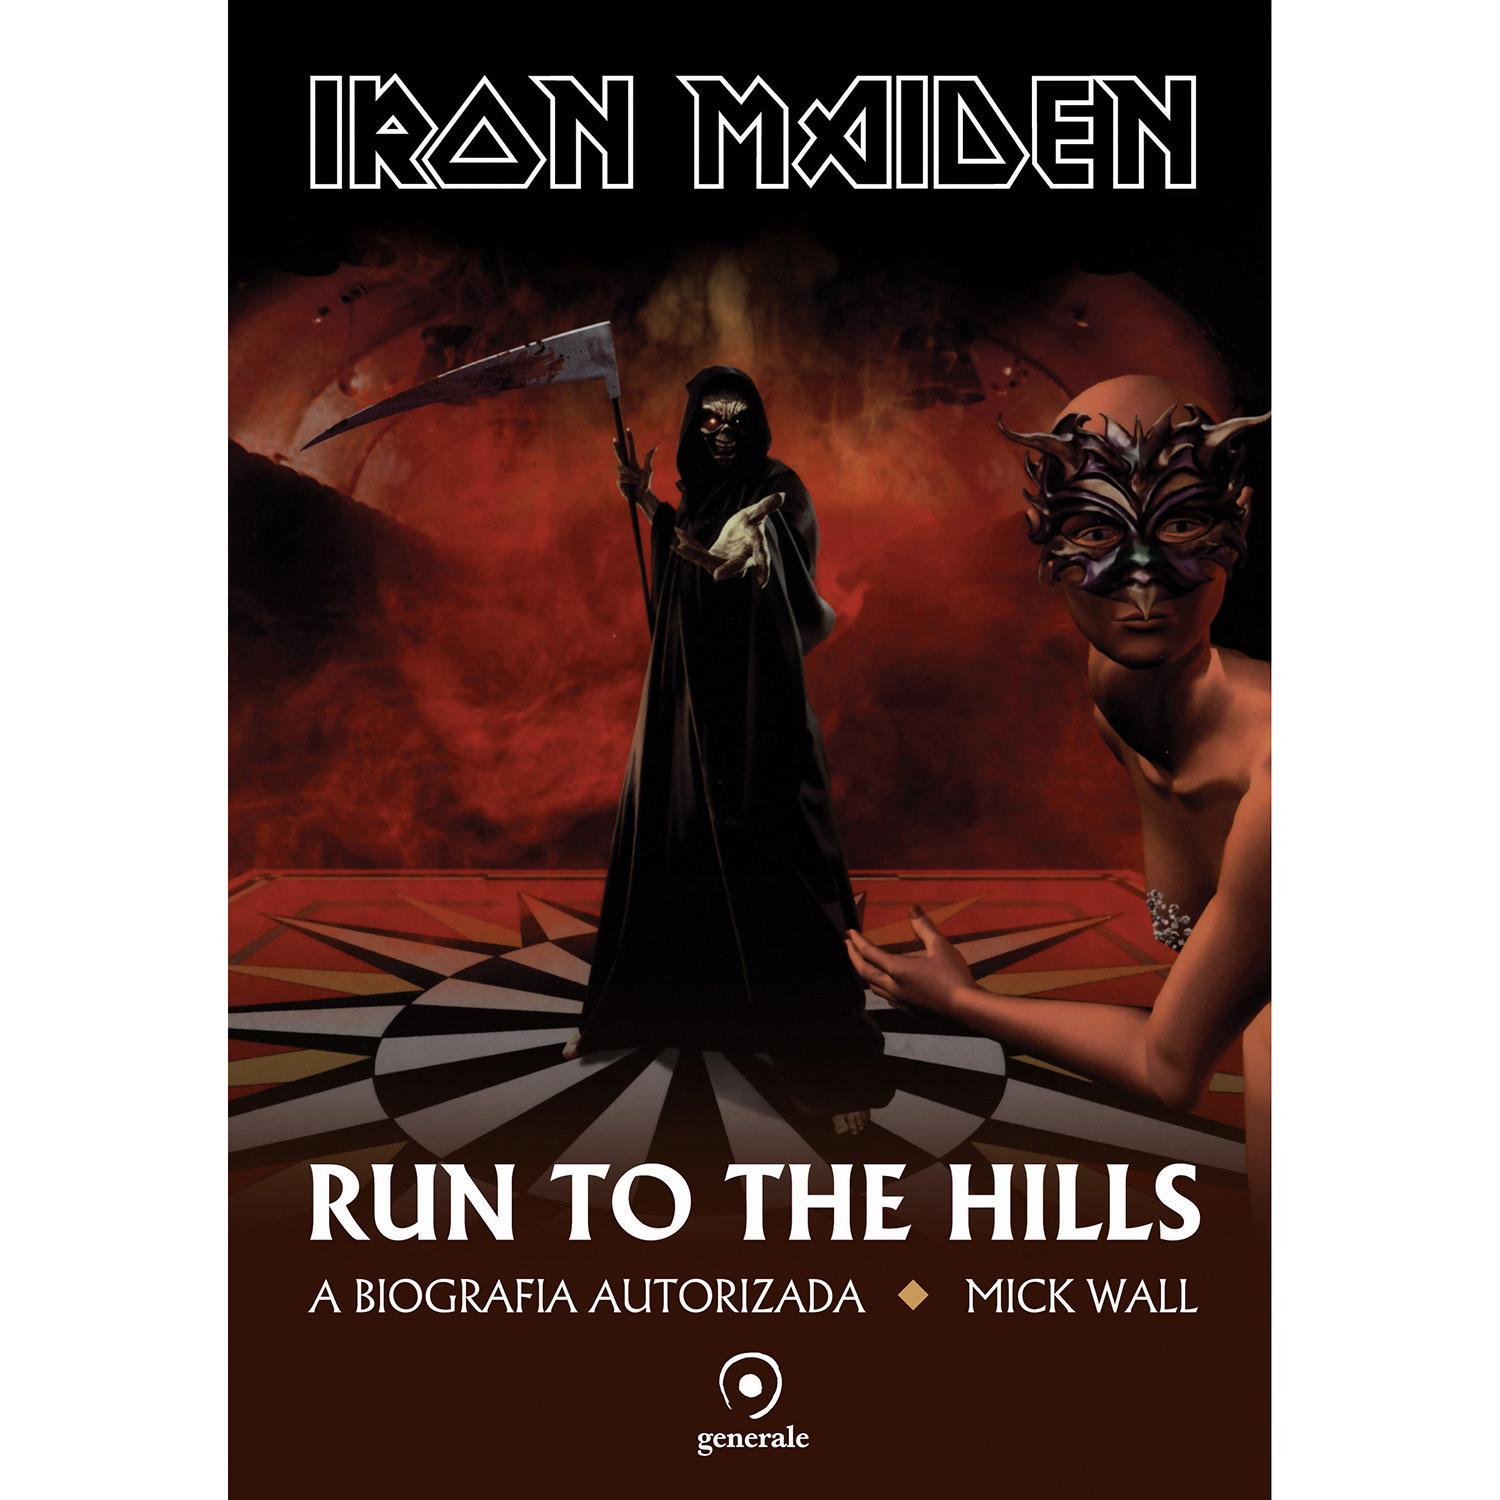 Livro - Iron Maiden: Run To The Hills - Uma Biografia Autorizada é bom? Vale a pena?